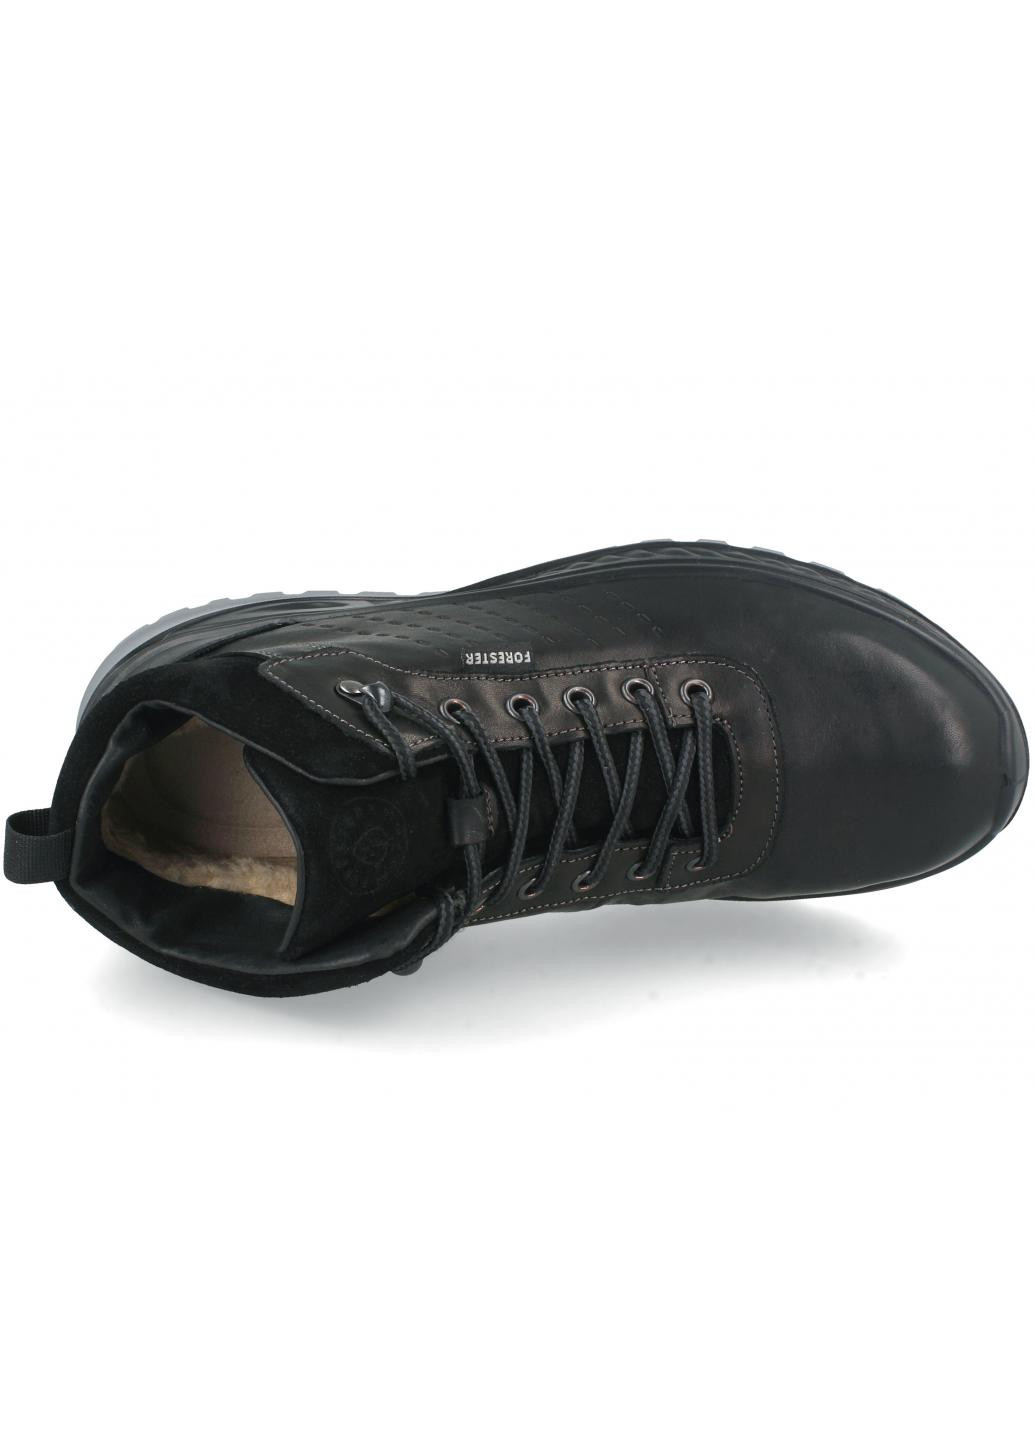 Черные зимние мужские кроссовки ergostrike 18354-9 made in europe Forester